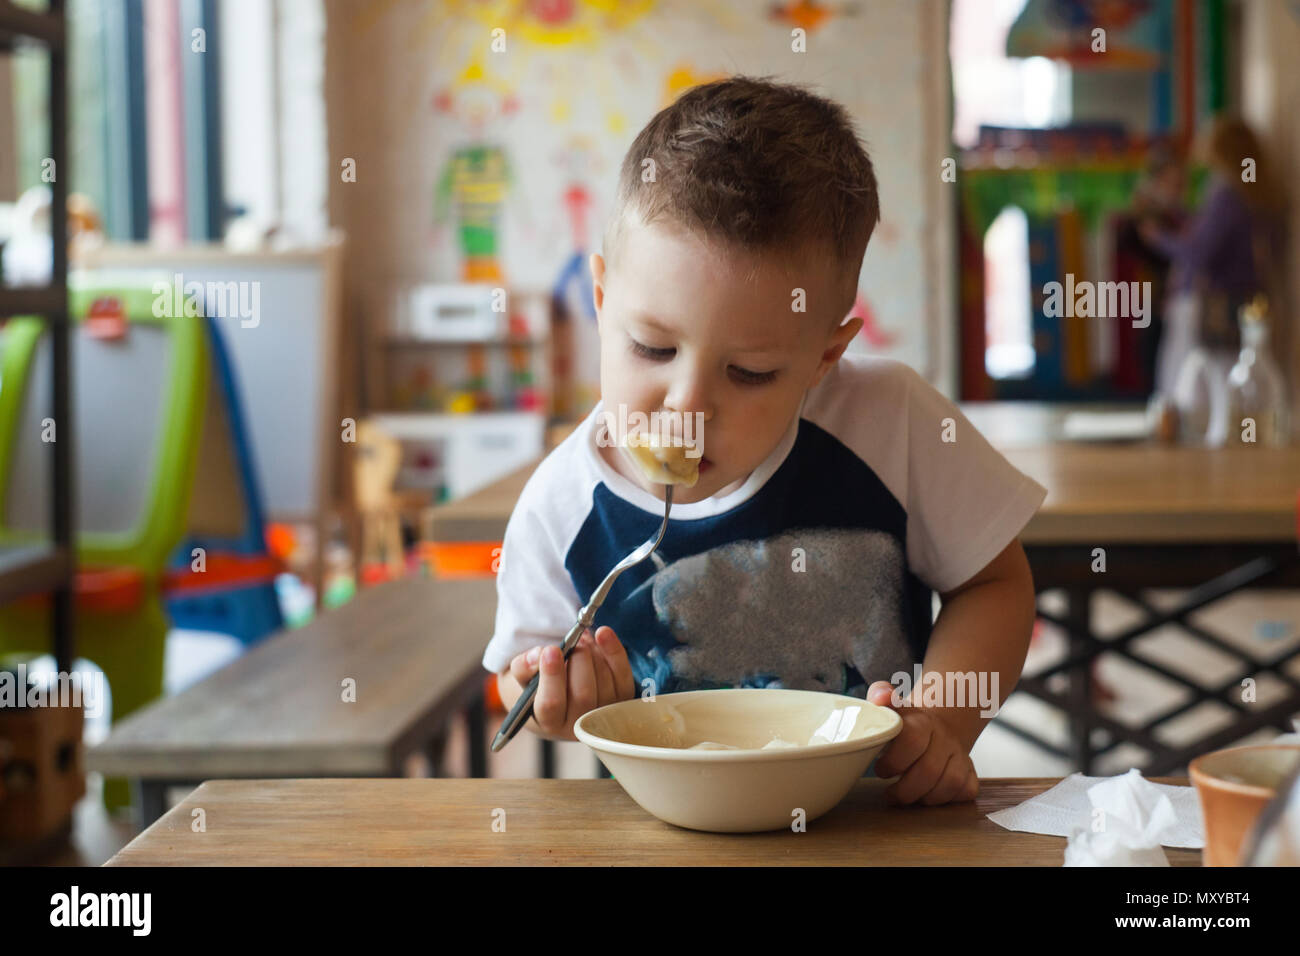 Kleines Kind Junge mit Abendmahl oder Abendessen im Hotel Restaurant oder Cafe. Stockfoto